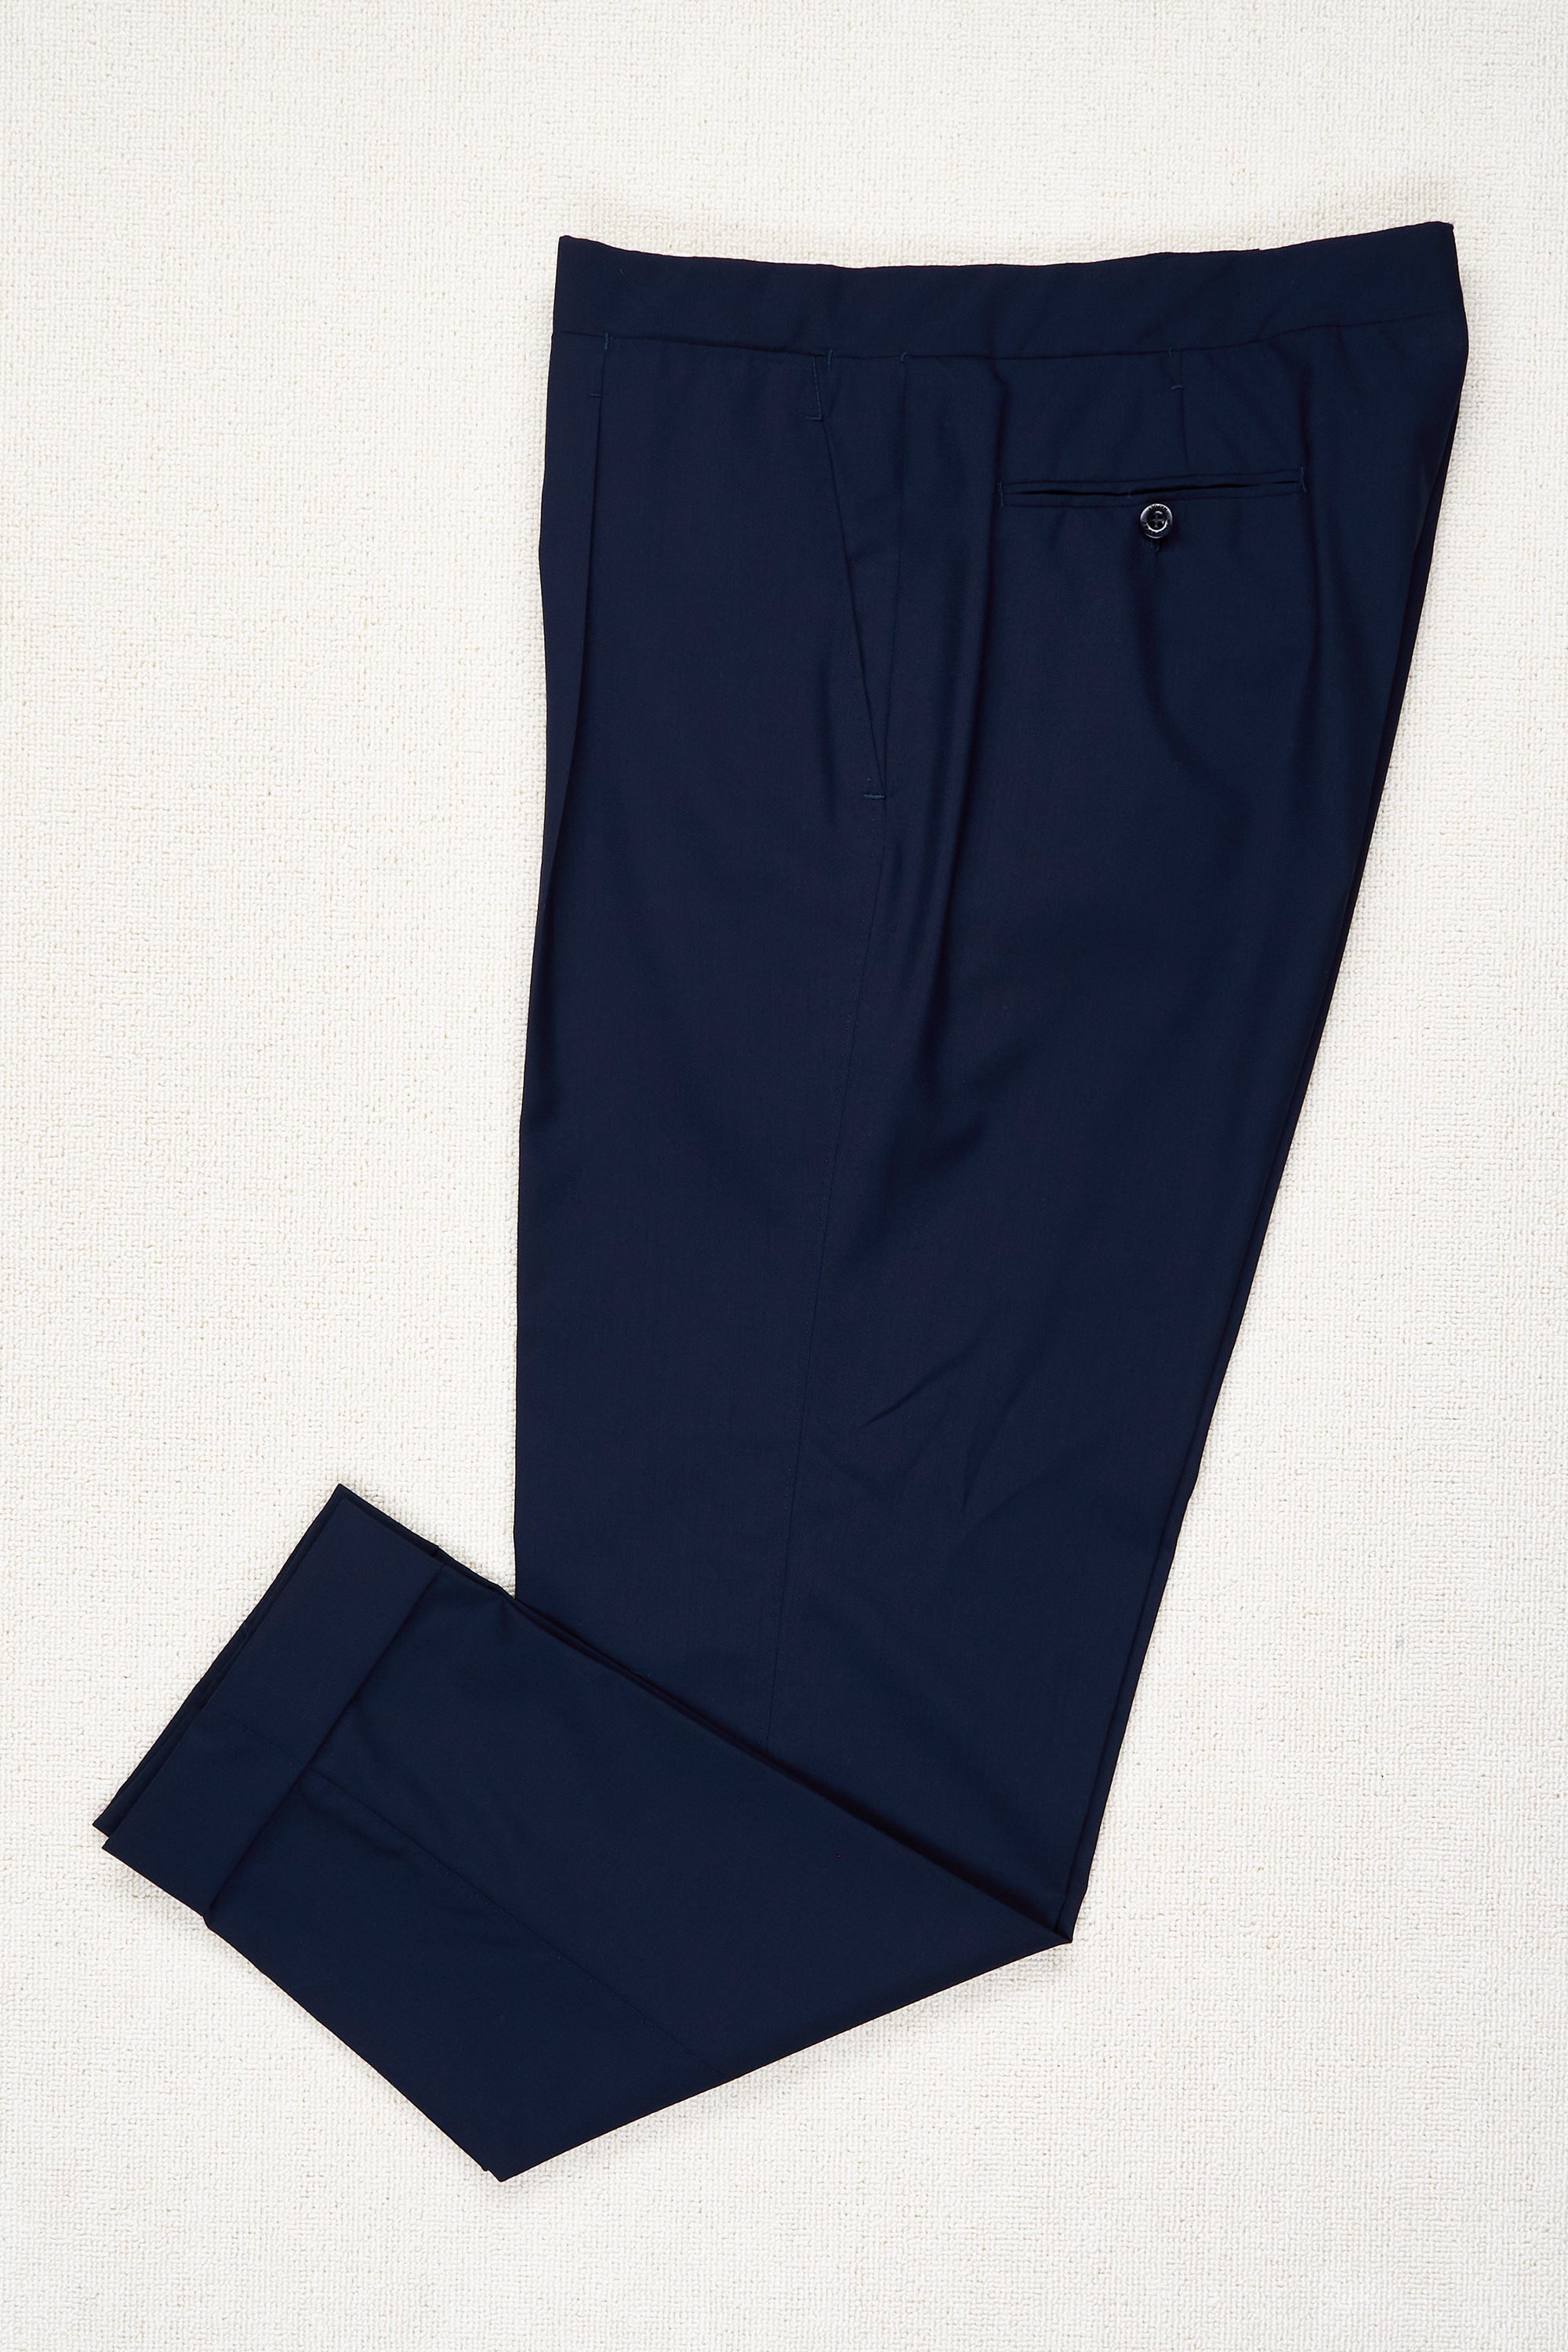 Ambrosi Napoli Navy Wool Single Pleat Trousers Bespoke